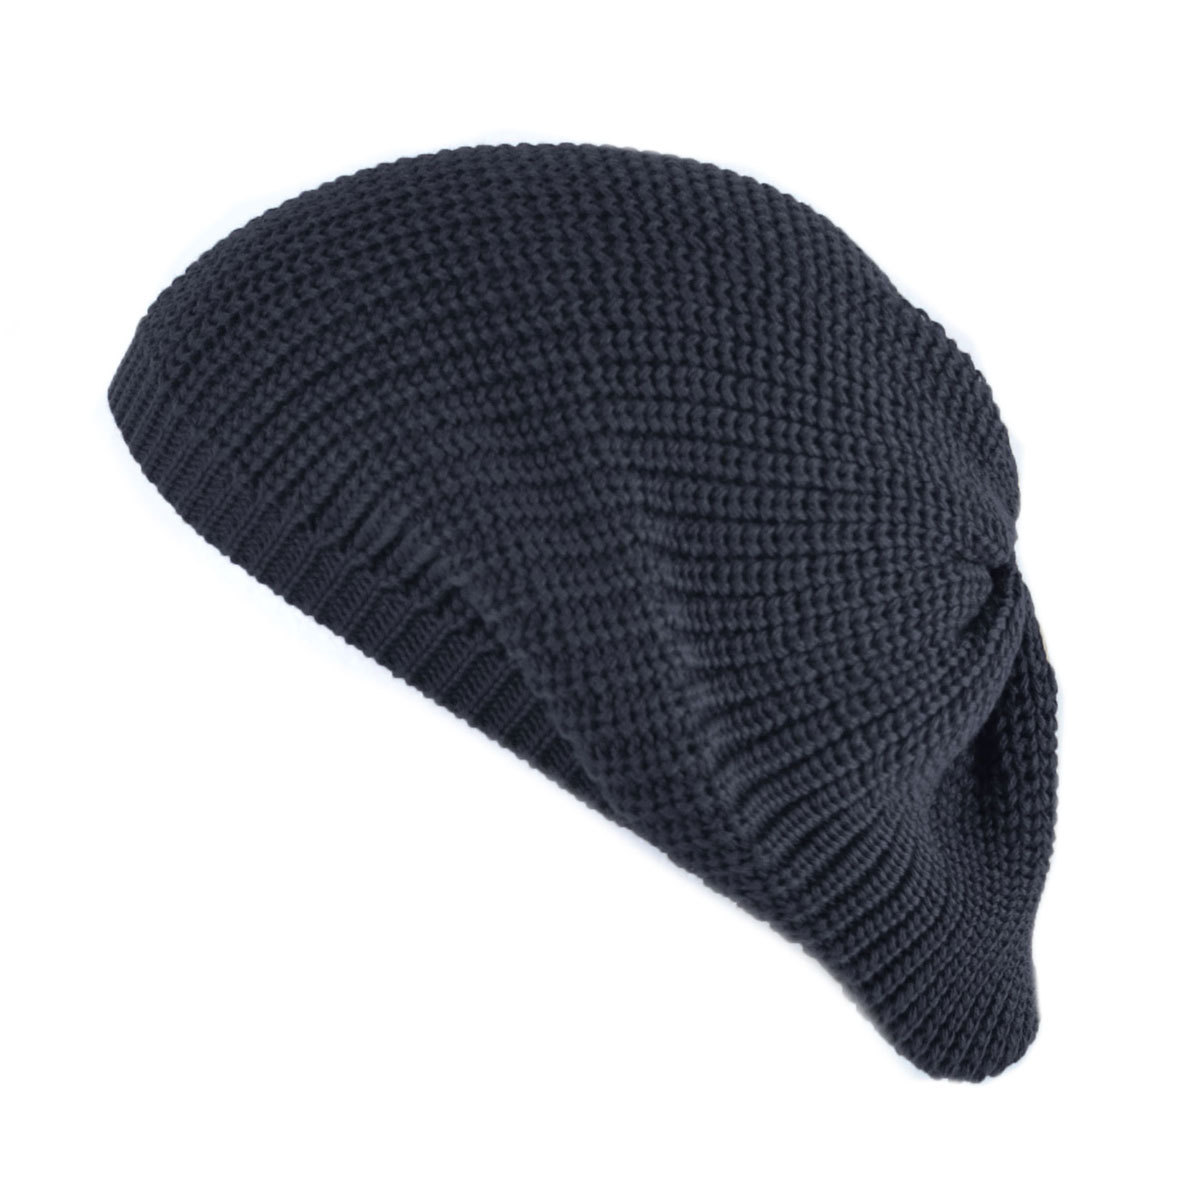 ベレー帽 メンズ レディース 秋冬 冬用 おしゃれ | ランキン ニットベレー 帽子